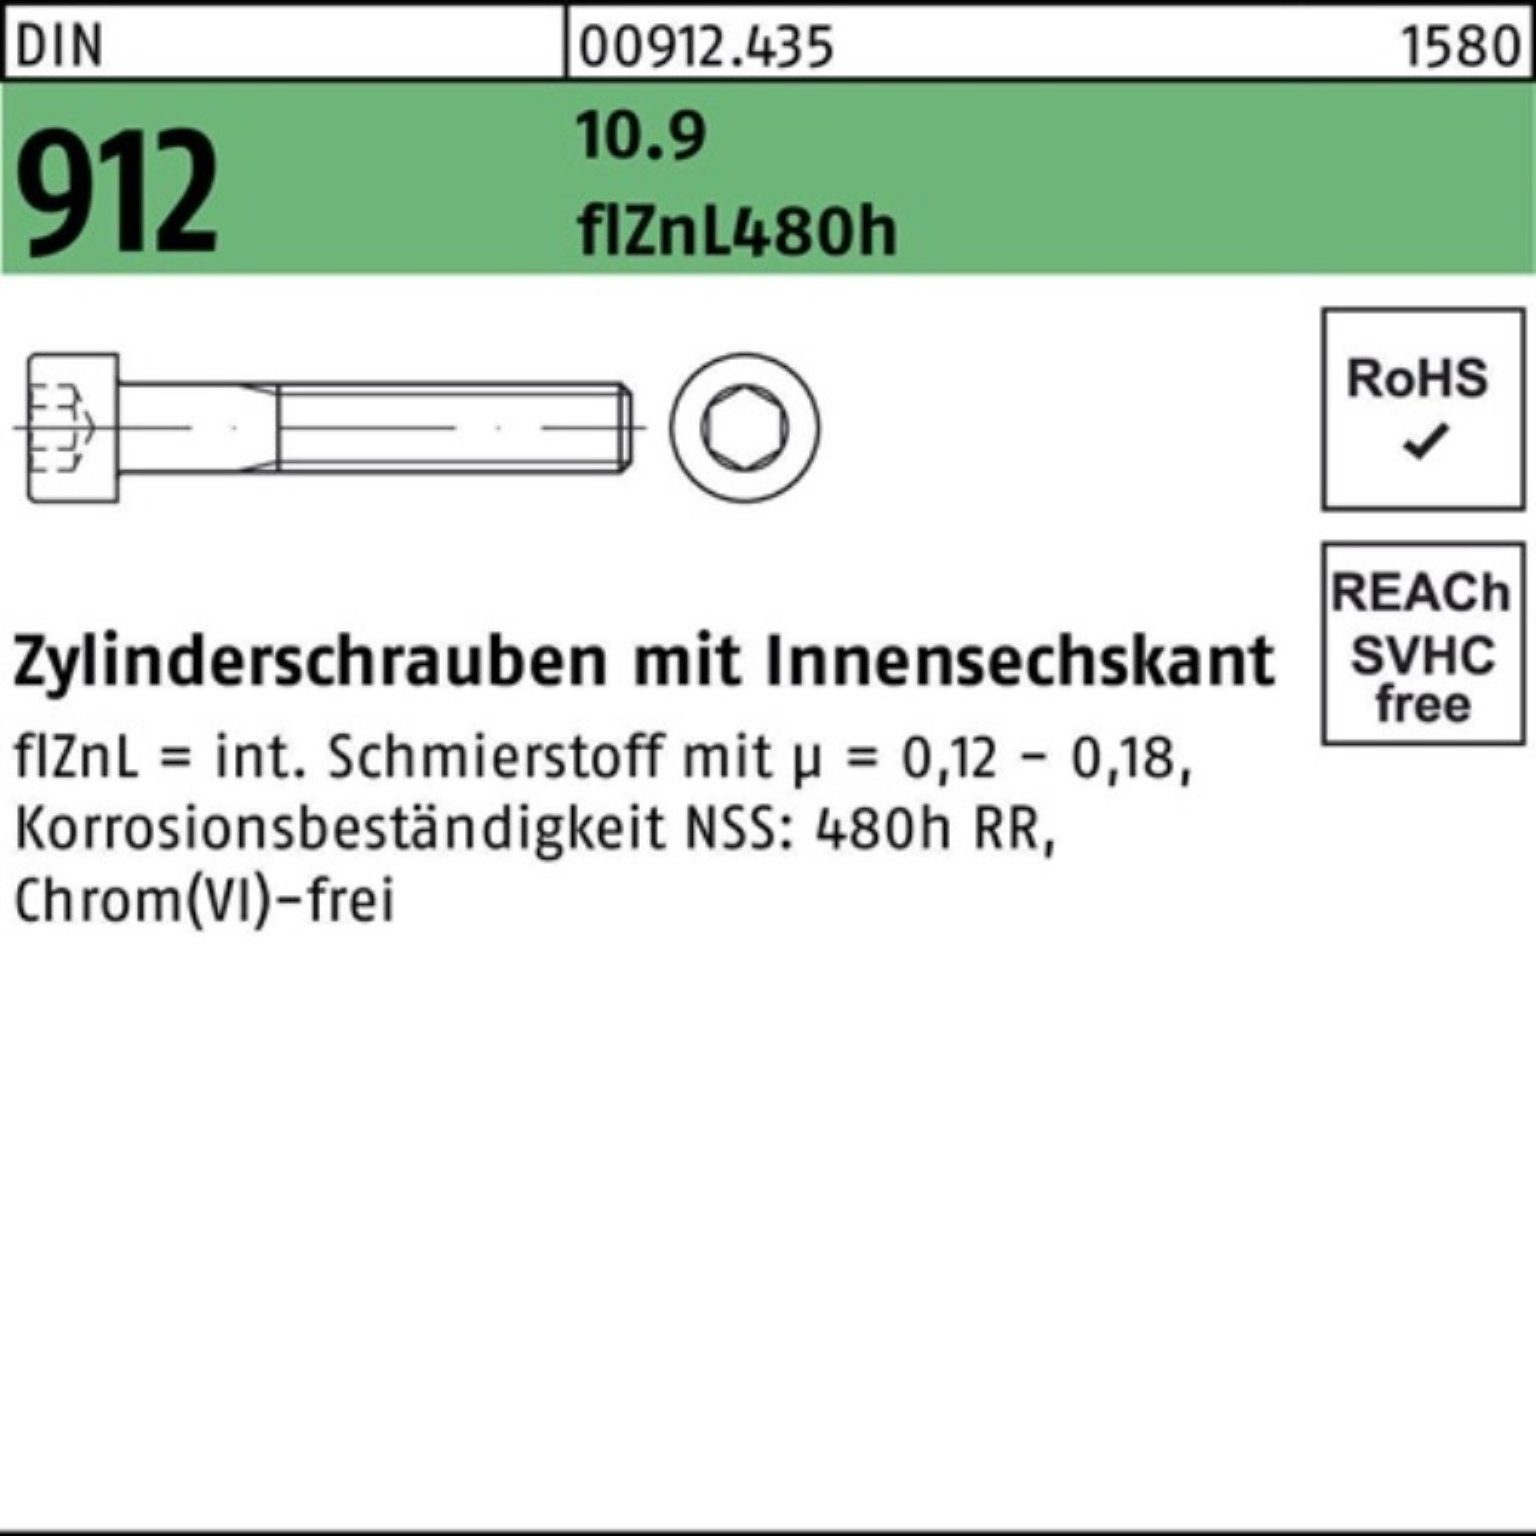 Reyher Zylinderschraube 200er Pack Zylinderschraube 10.9 Innen-6kt flZnL/nc/x/x 912 M8x45 DIN